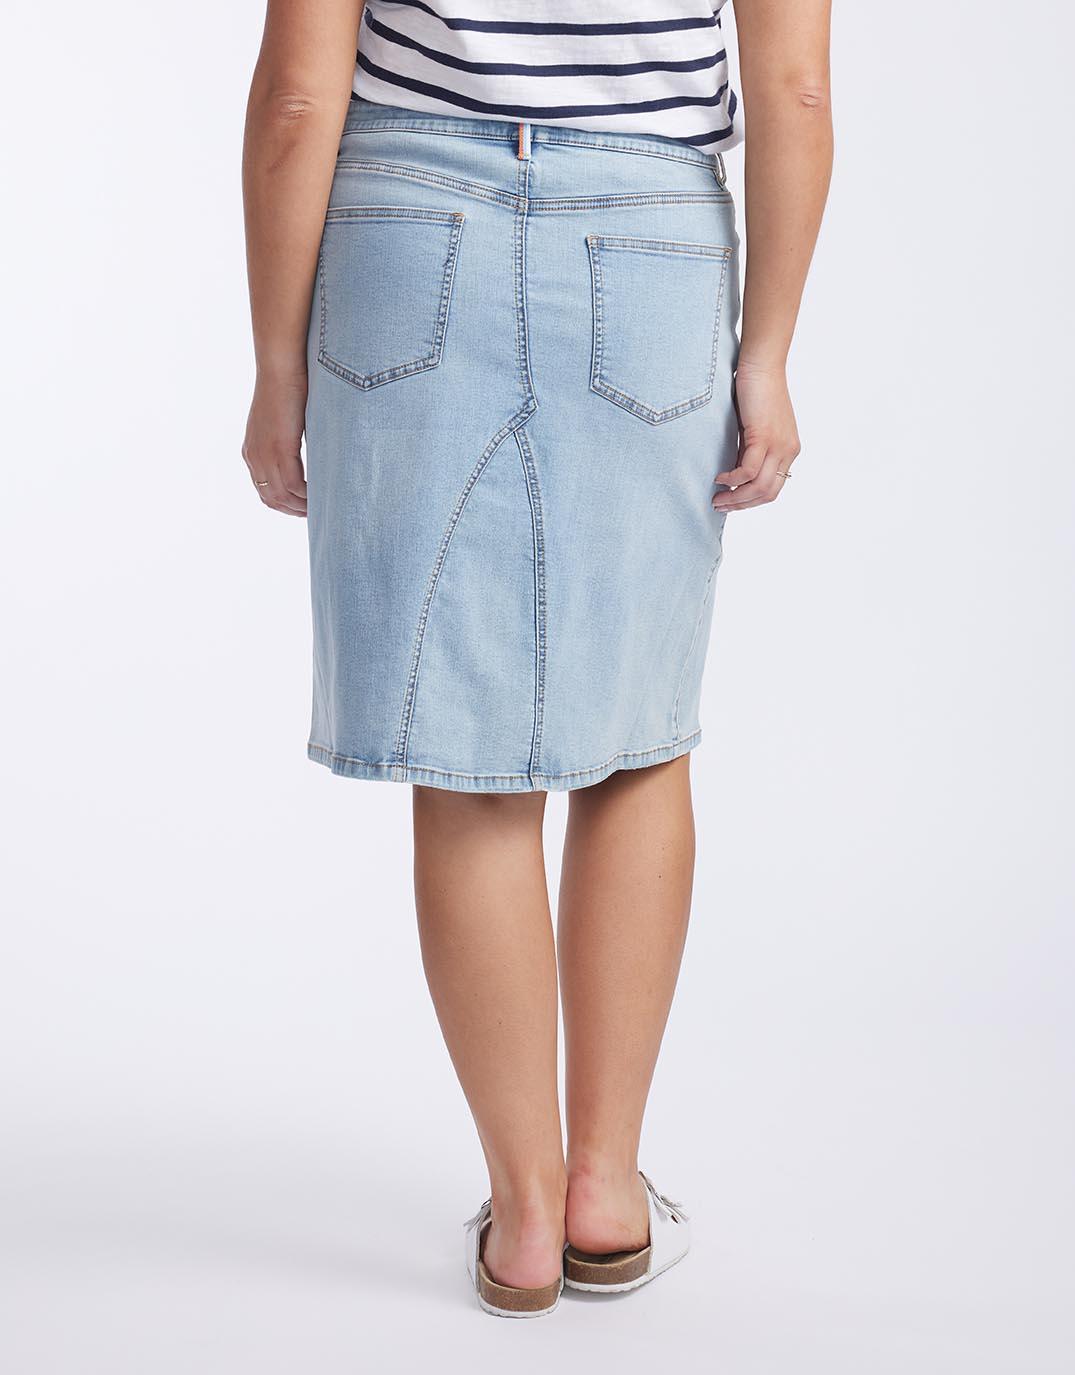 KATIES - Womens Skirts - Knee Length Split Front Denim Skirt | eBay